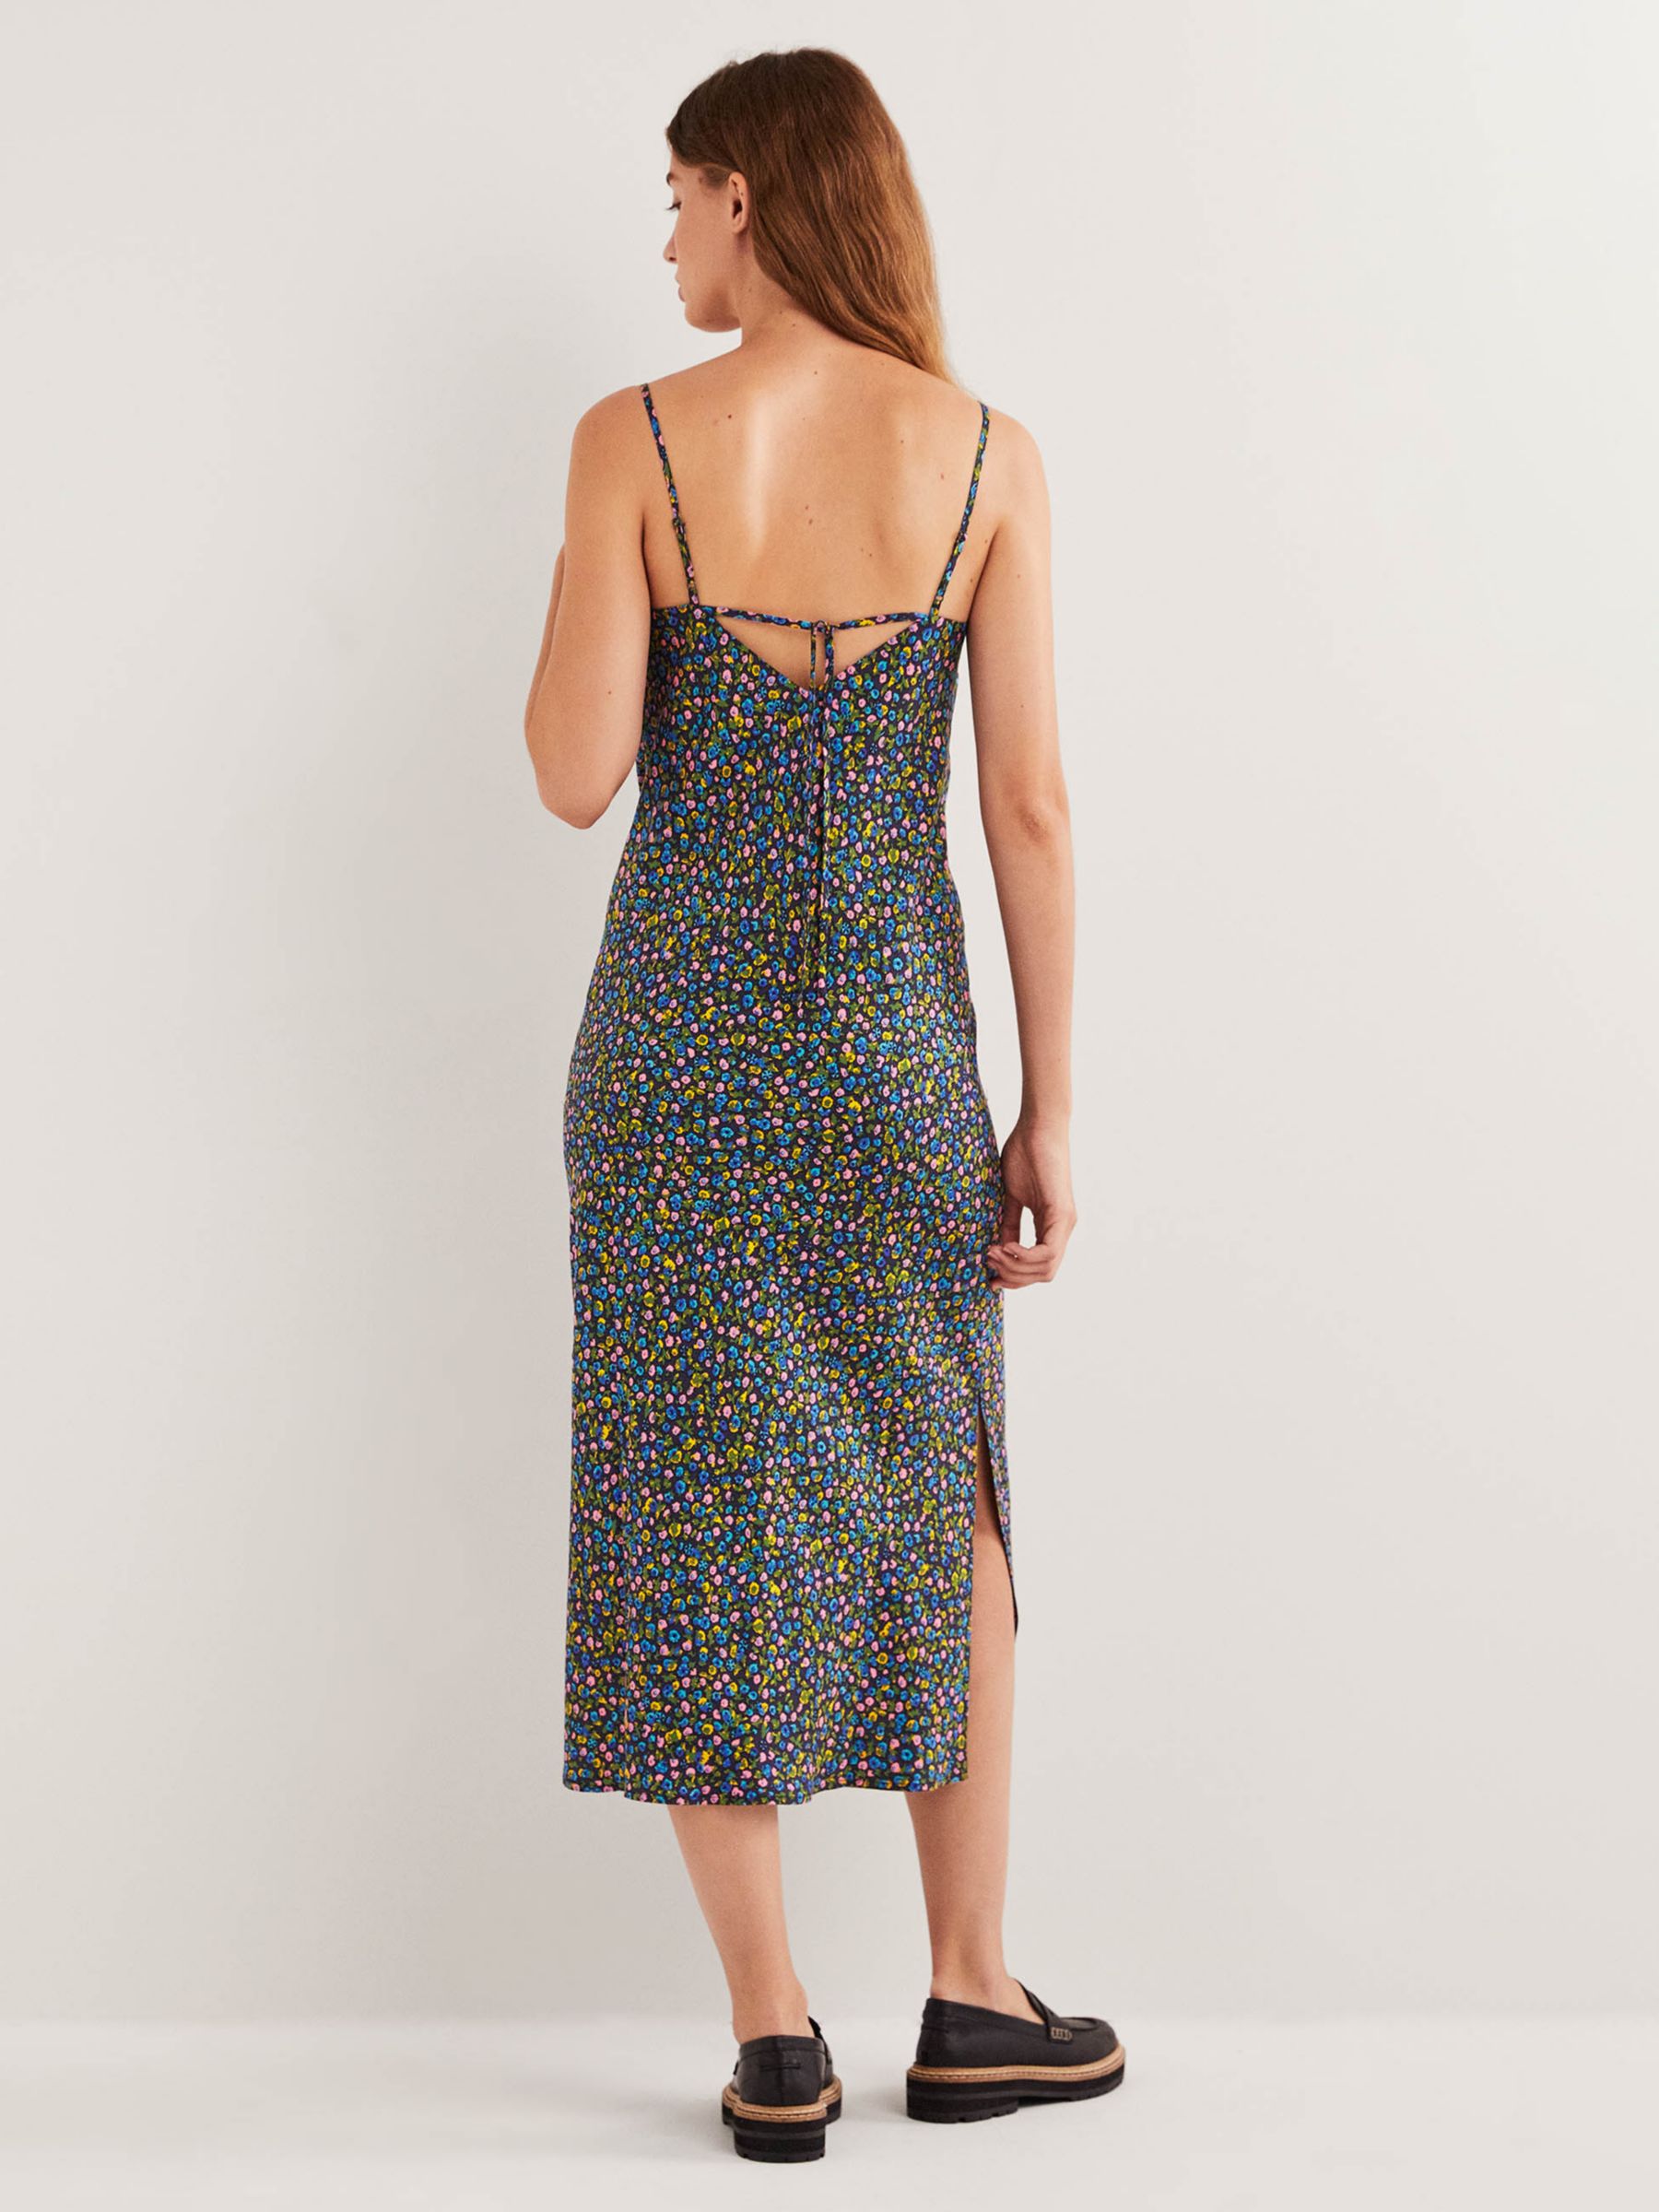 Boden Elena Floral Terrace Print Midi Slip Dress, Navy/Multi, 14